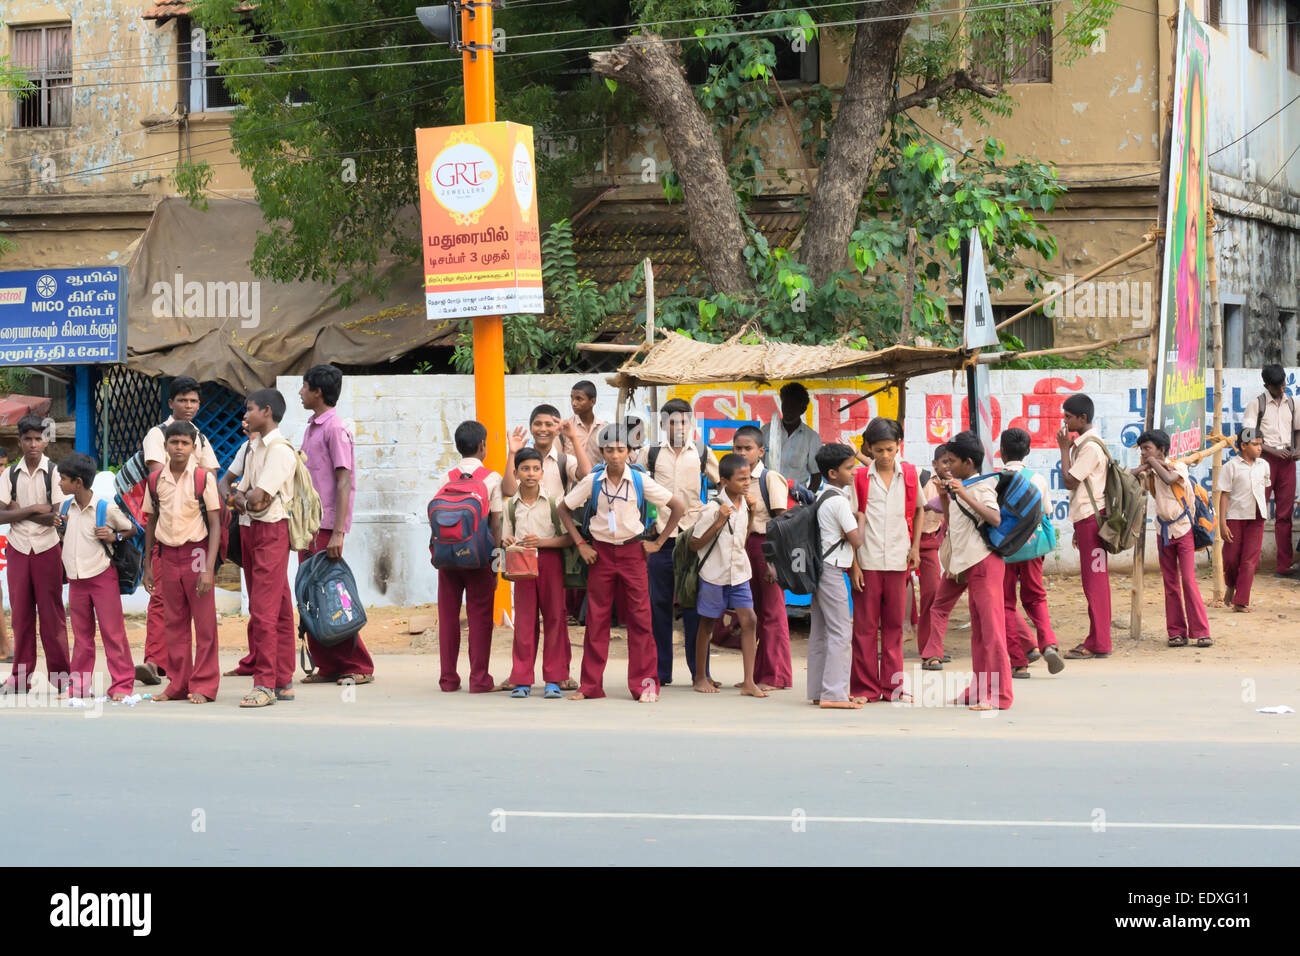 MADURAI, India - 15 febbraio: Un non ben identificato i ragazzi in uniforme scolastica sono in piedi sul bordo della strada. India, nello Stato del Tamil Nadu, Madurai. F Foto Stock